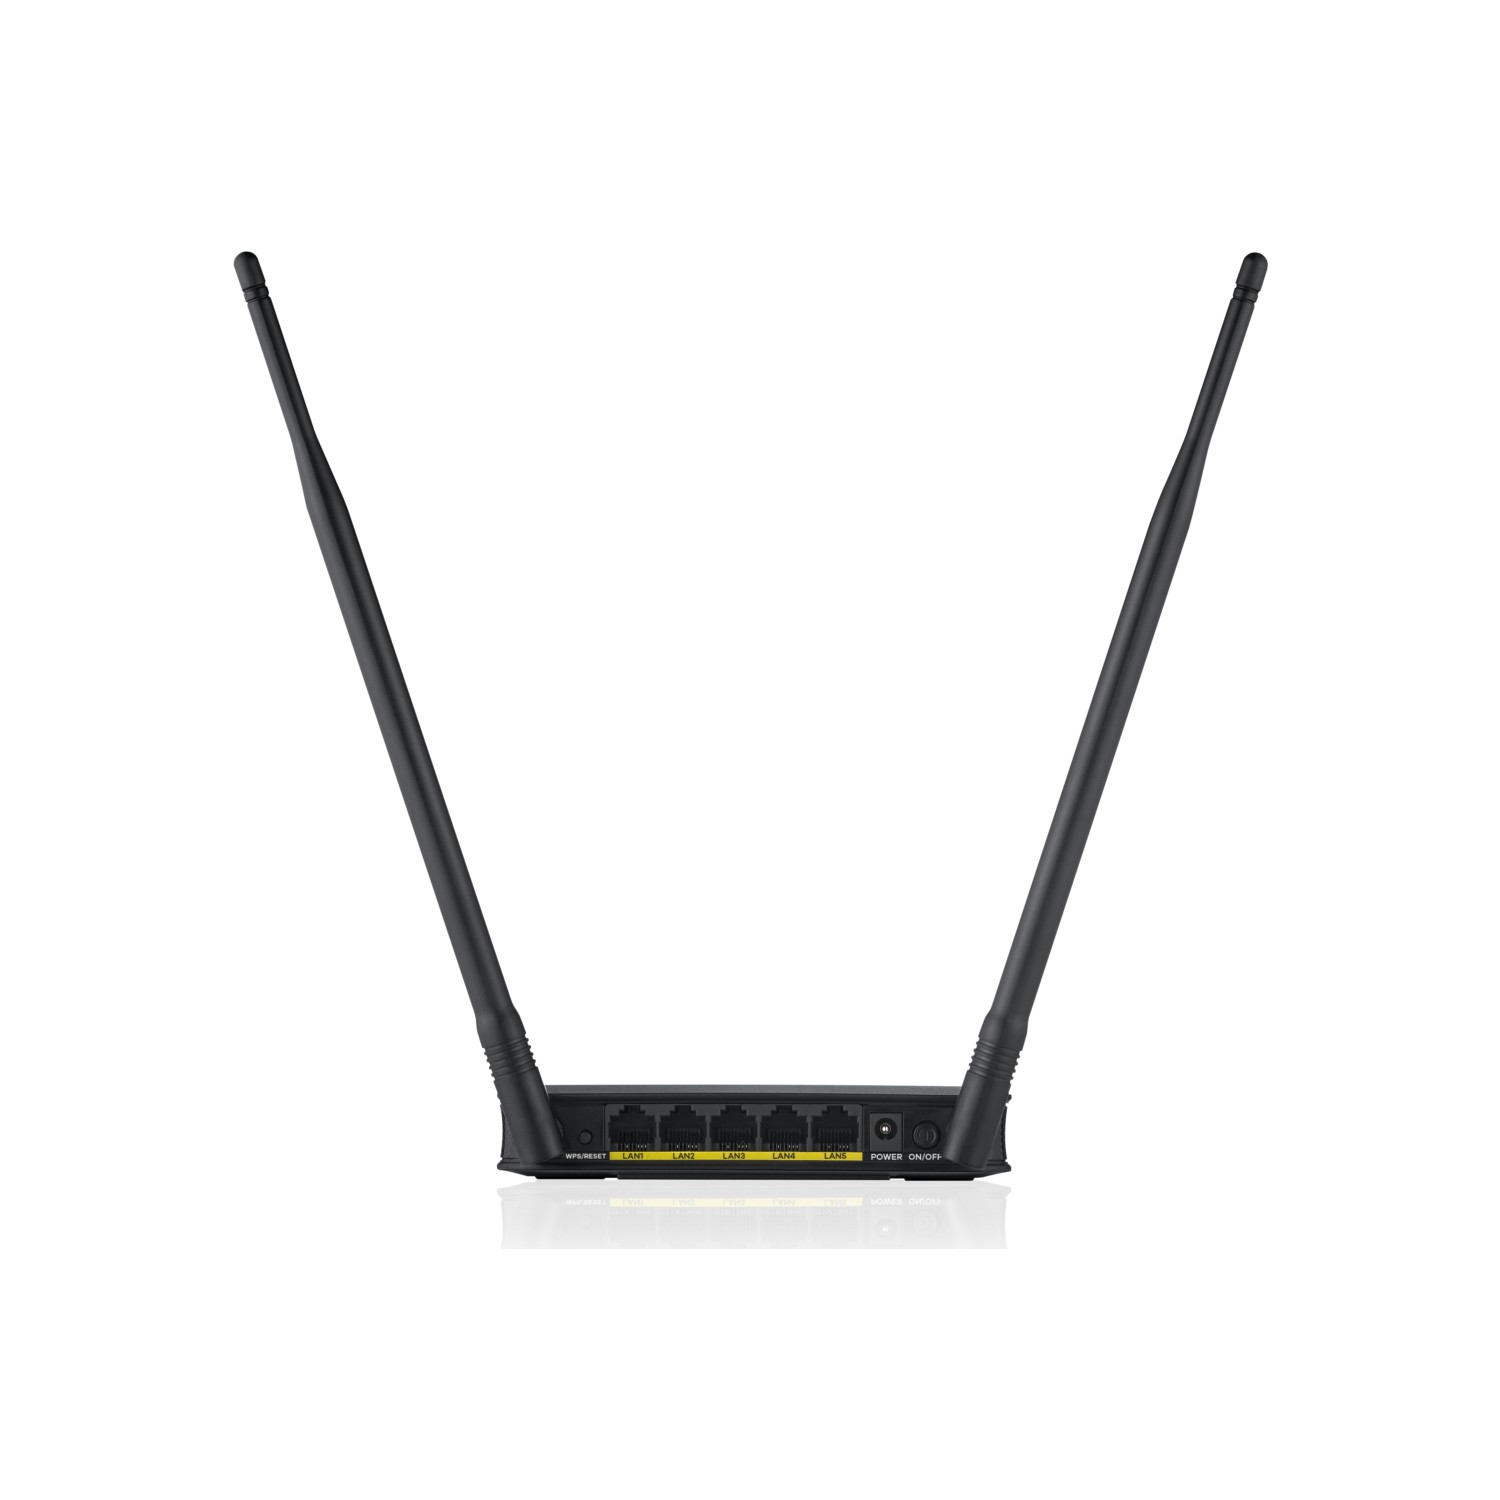 ZYXEL WAP3205 v3 300 Mbps 5-Port Kablosuz 14 dBi(2x7) Antenli Menzil Genişletici / AP/ ROUTER/Client